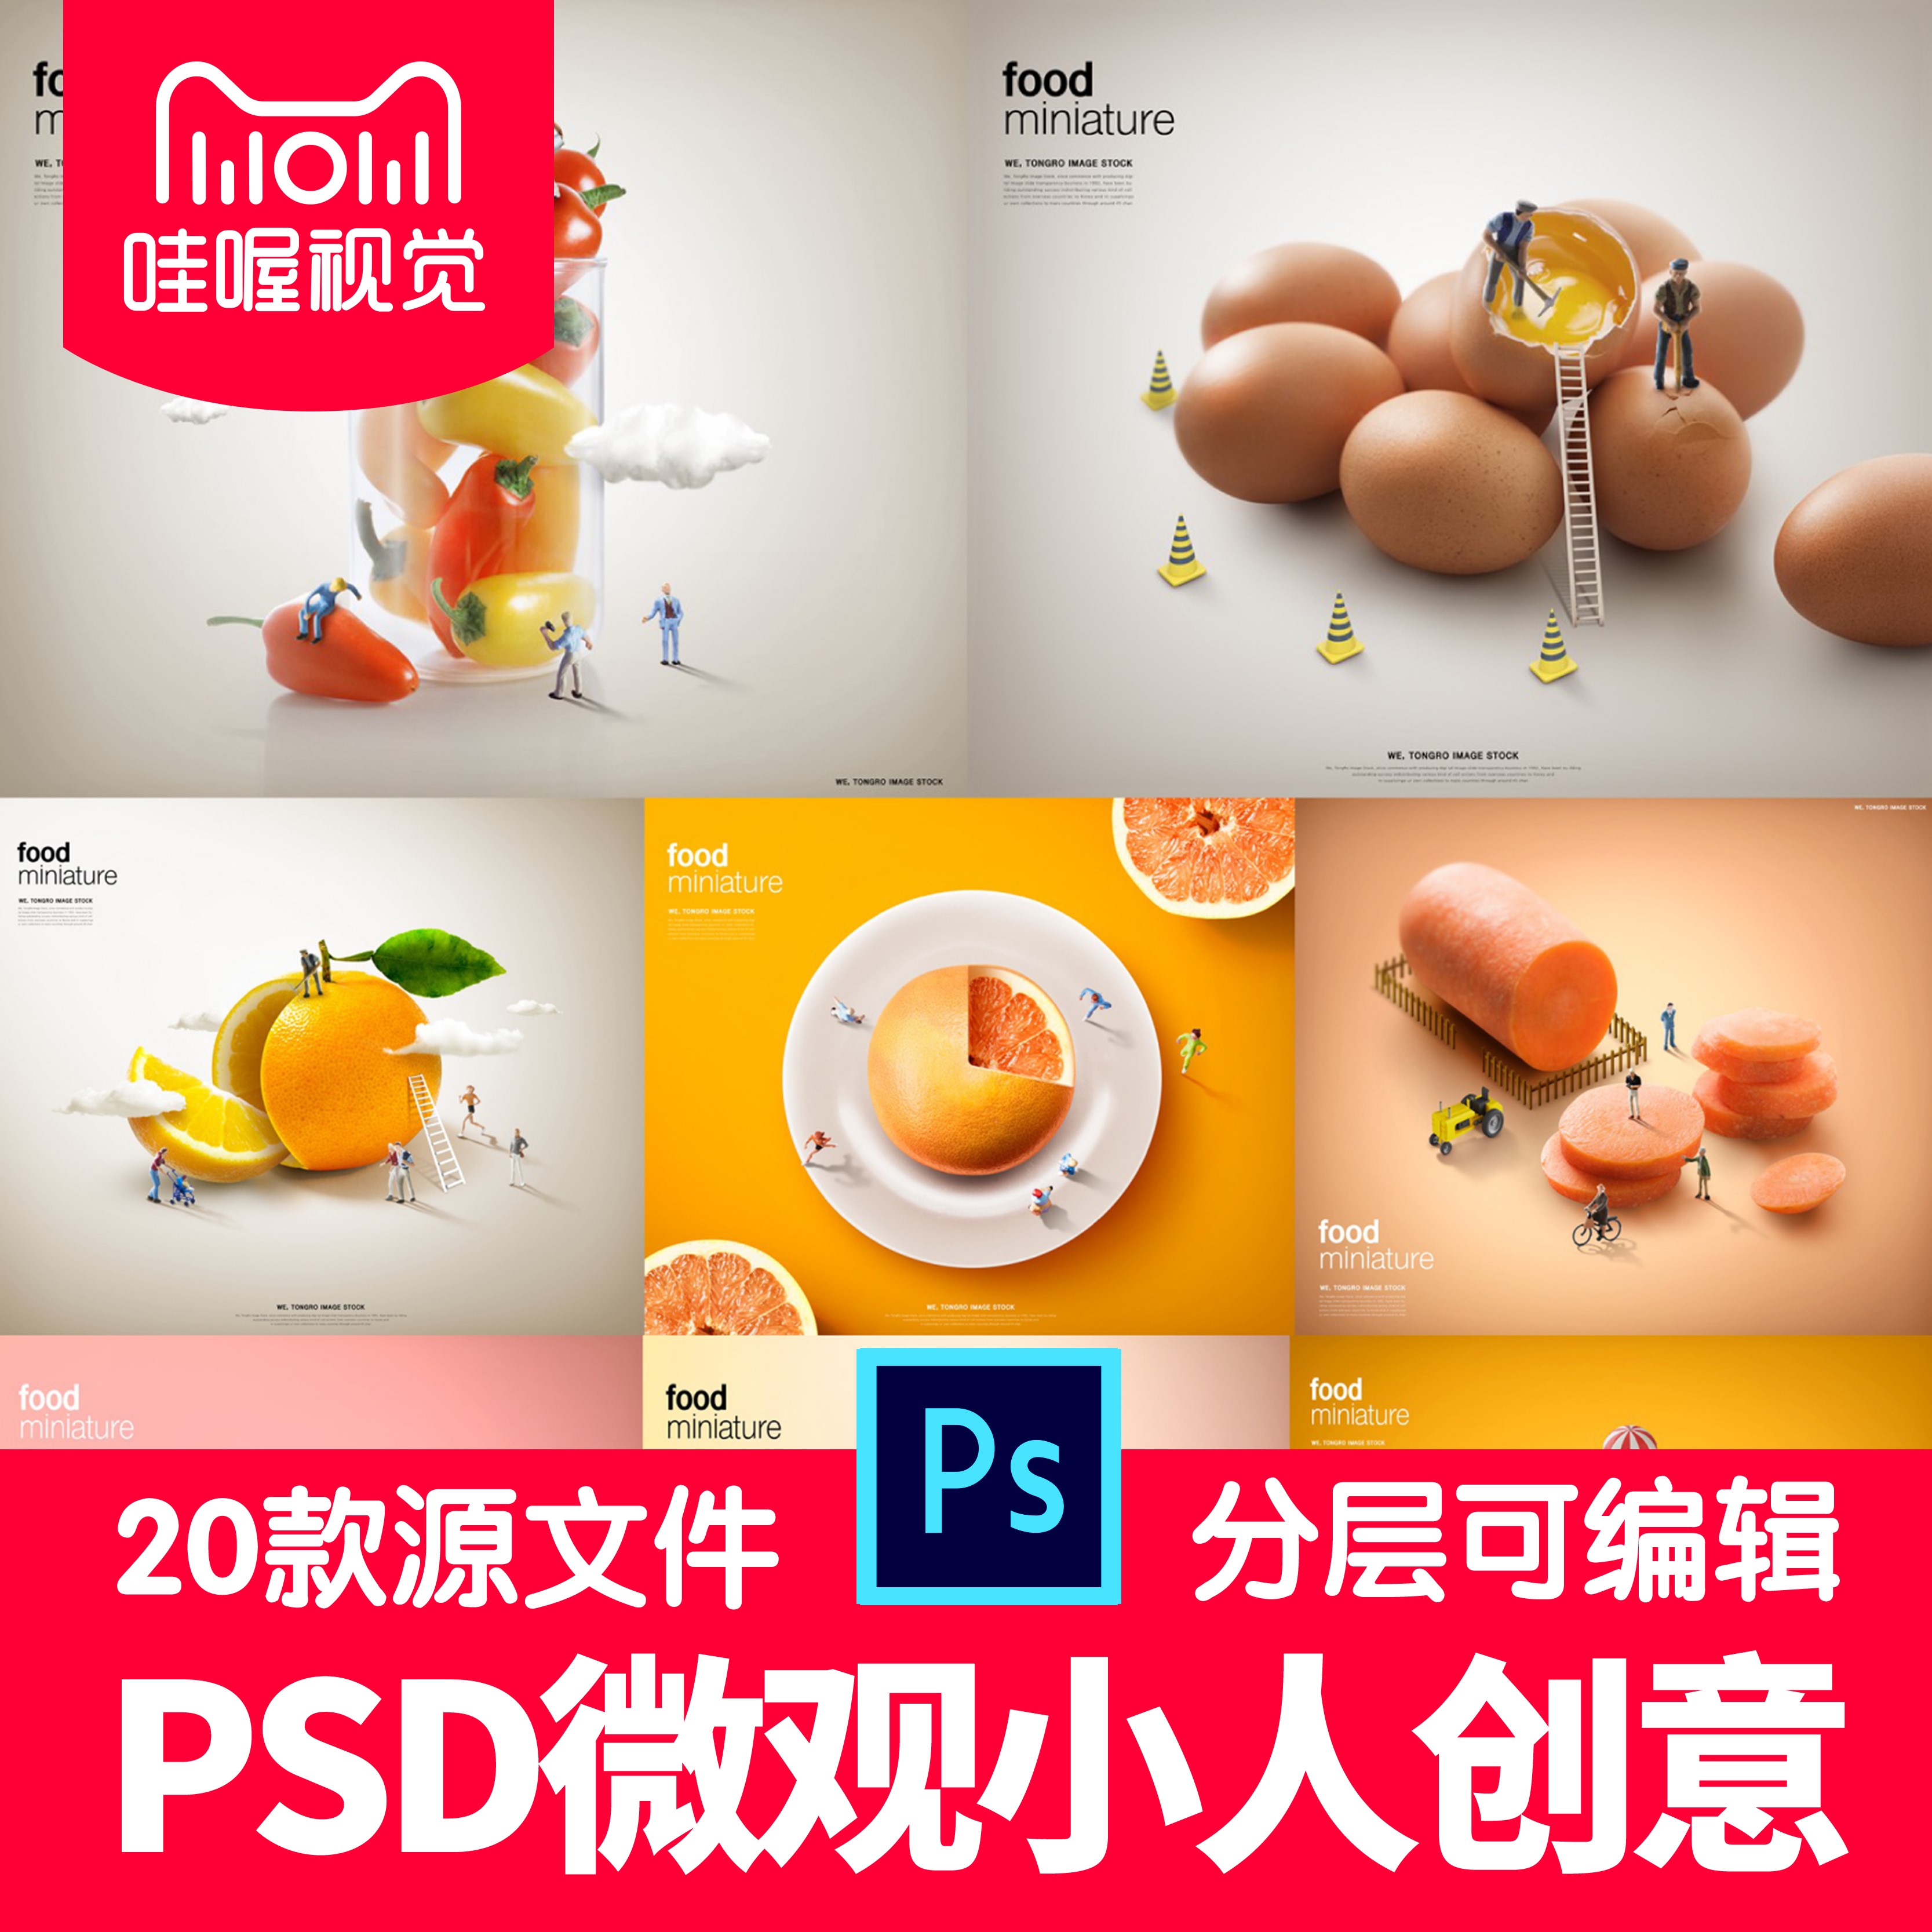 微观小人创意海报微缩微距拍摄影玩人偶放大食物蔬菜素材设计PSD